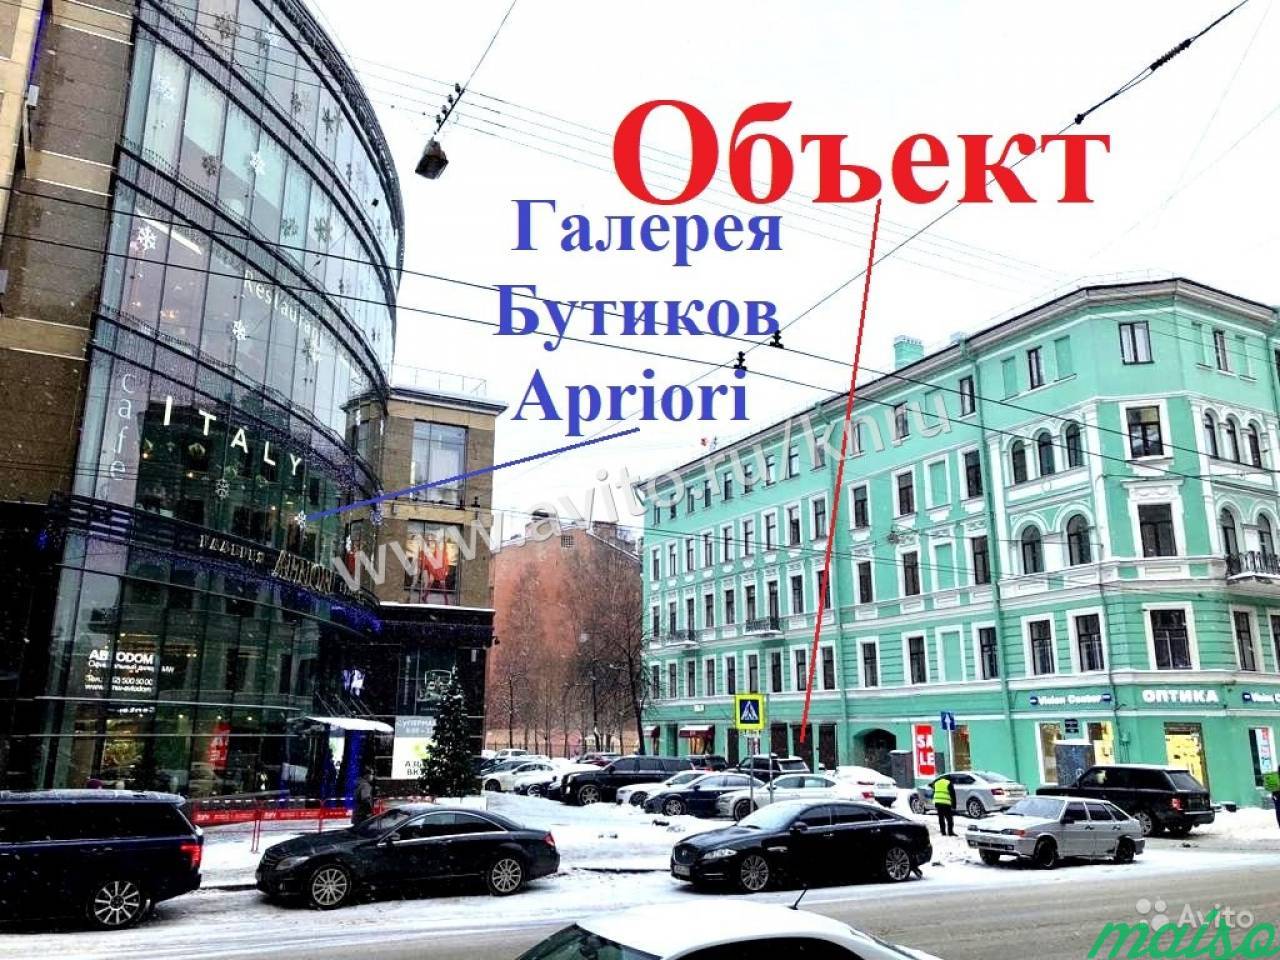 100м² активное торговое и ресторанное место в Санкт-Петербурге. Фото 1